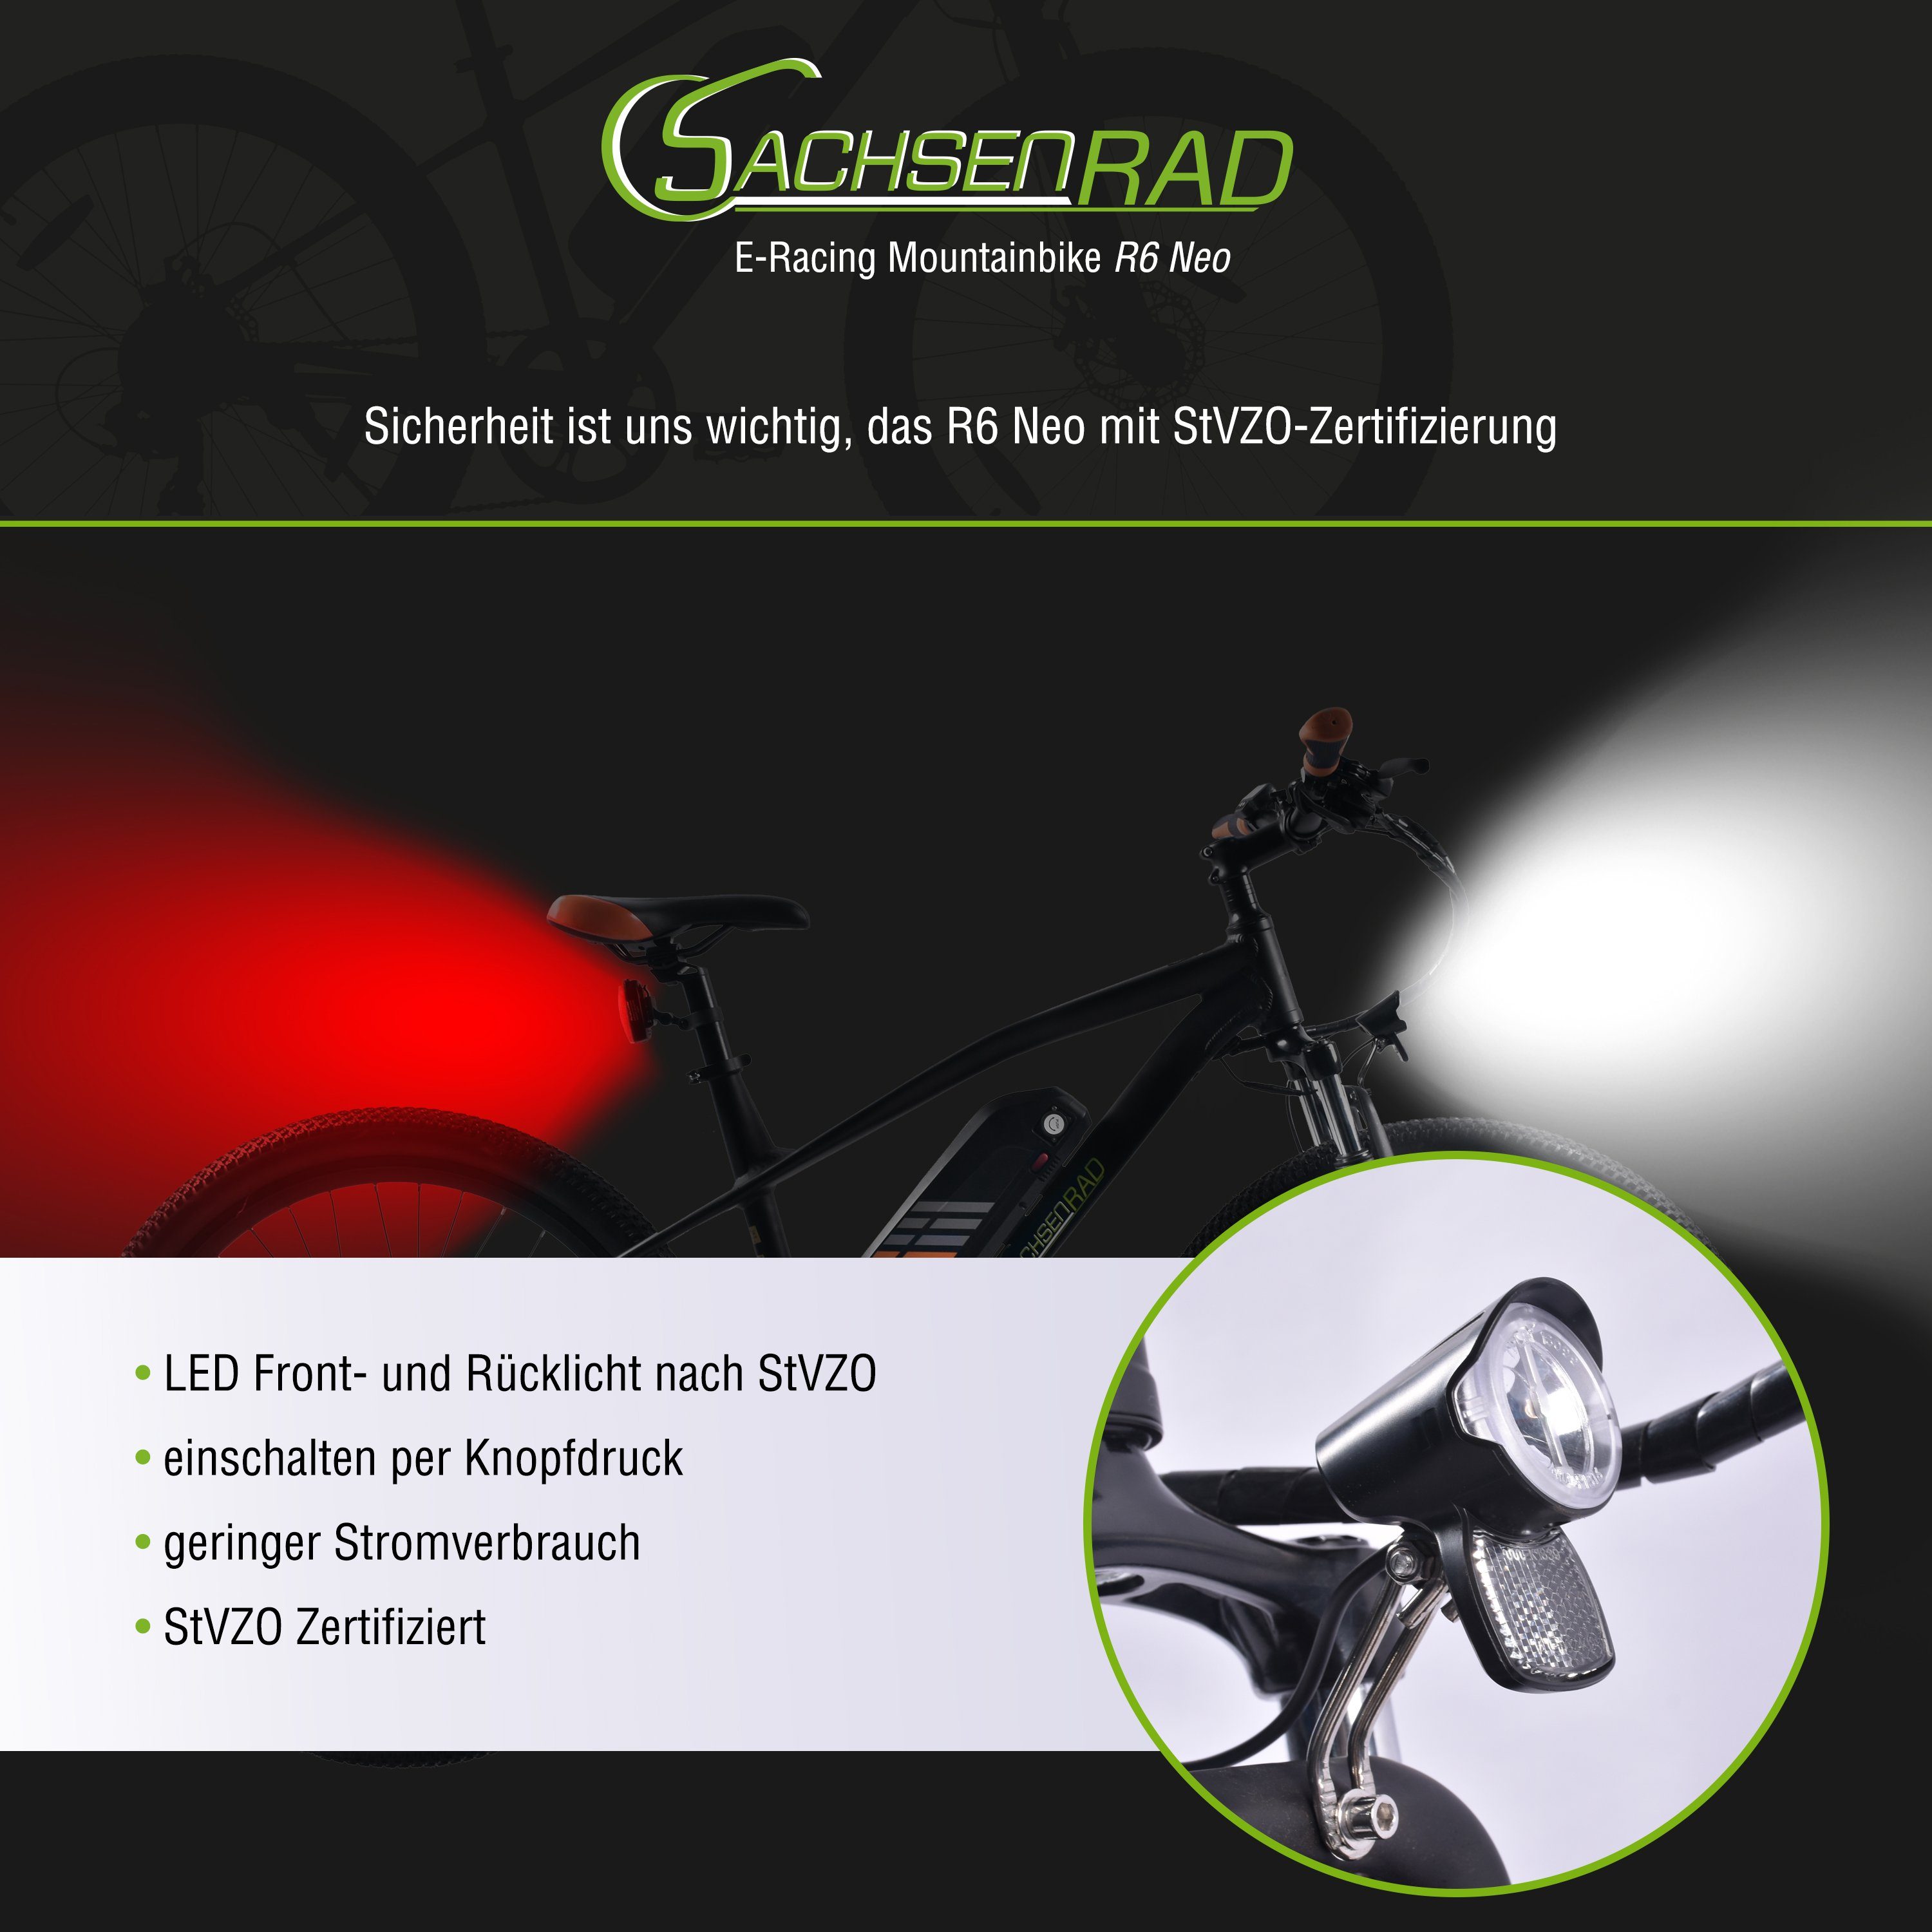 „Excellent Design“ Kettenschaltung, R6 Neo Design Gang, Award SachsenRAD Product Zoll, 7 29 2022 German E-Bike